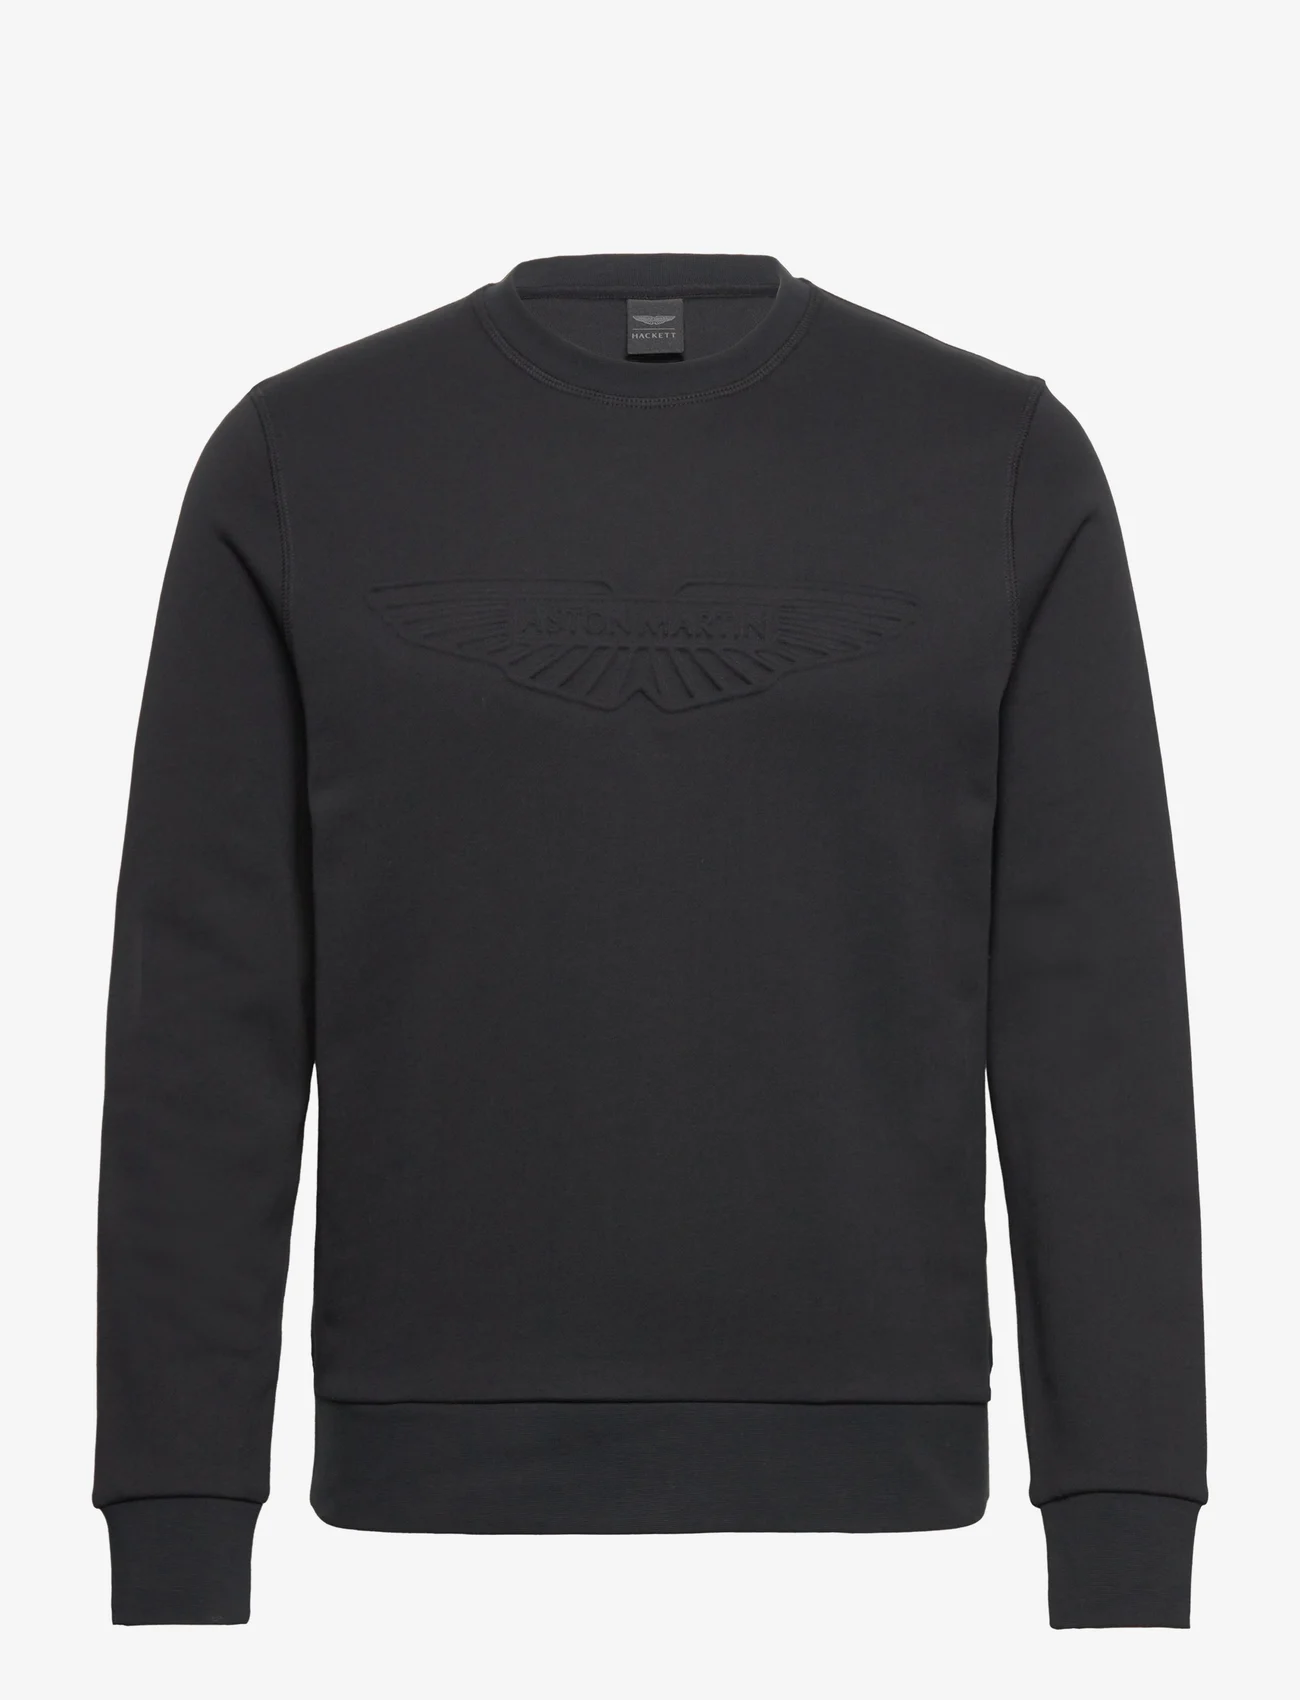 Hackett London - AM EMBOSSED CREW - sportiska stila džemperi - black - 0